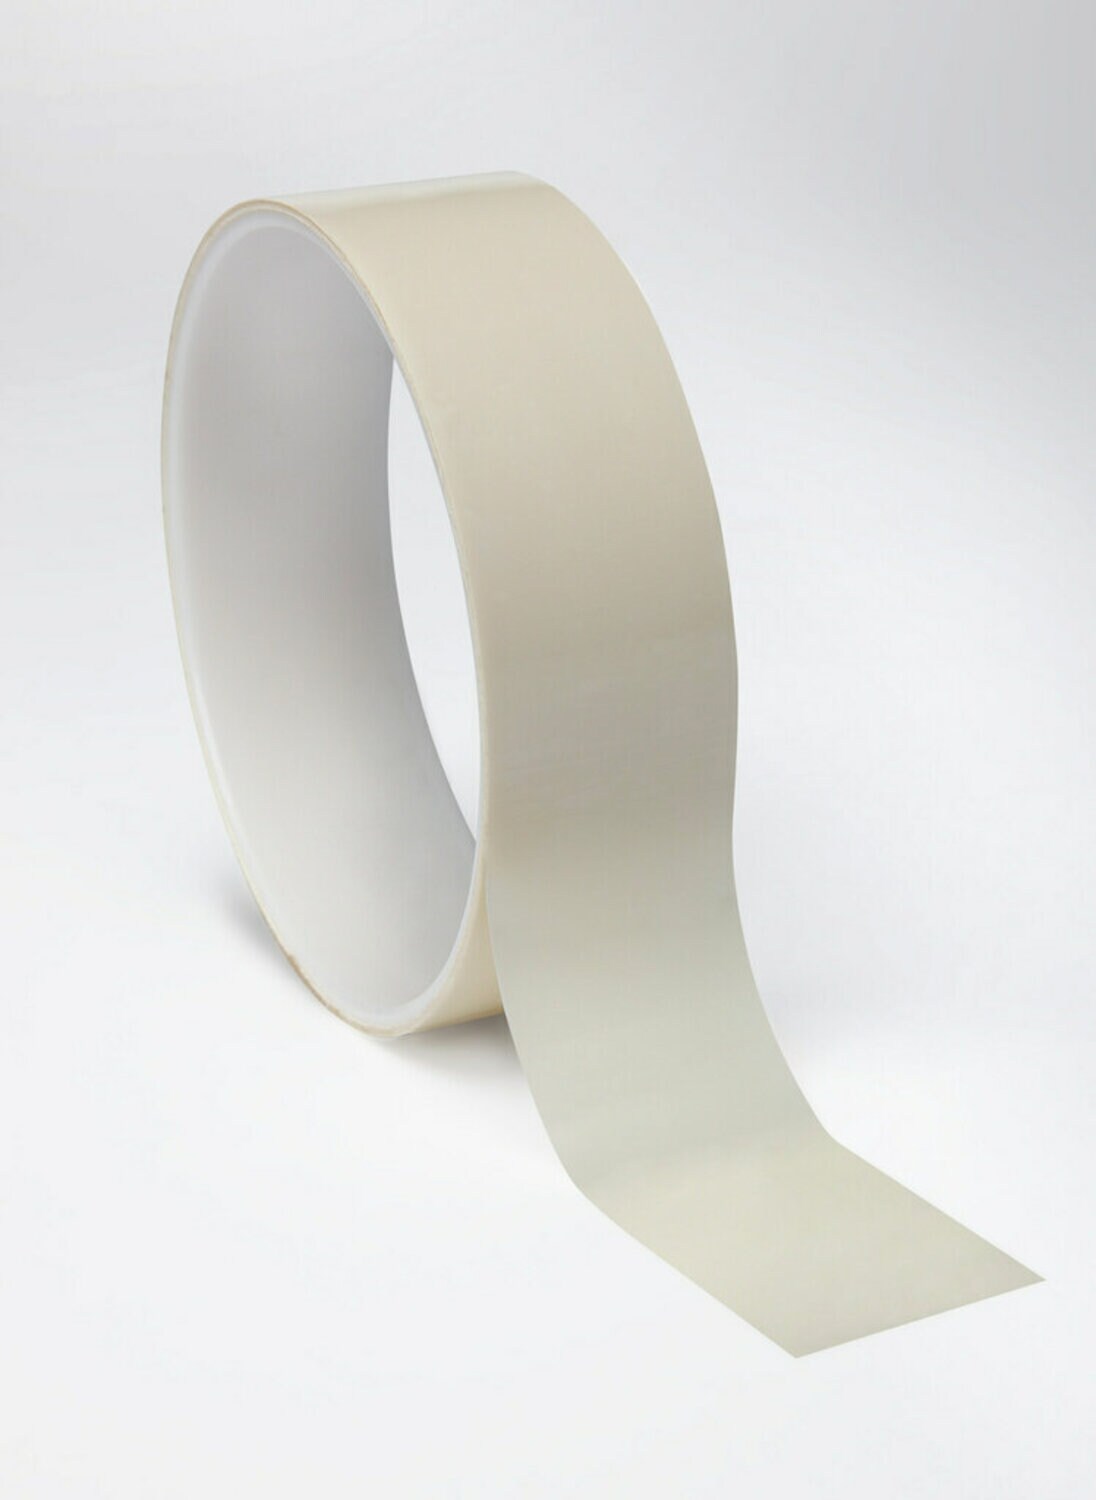 7100038690 - 3M Polyester Film Tape 854 White, 2 in x 72 yds, 2.7 mil, 24/Case, Bulk